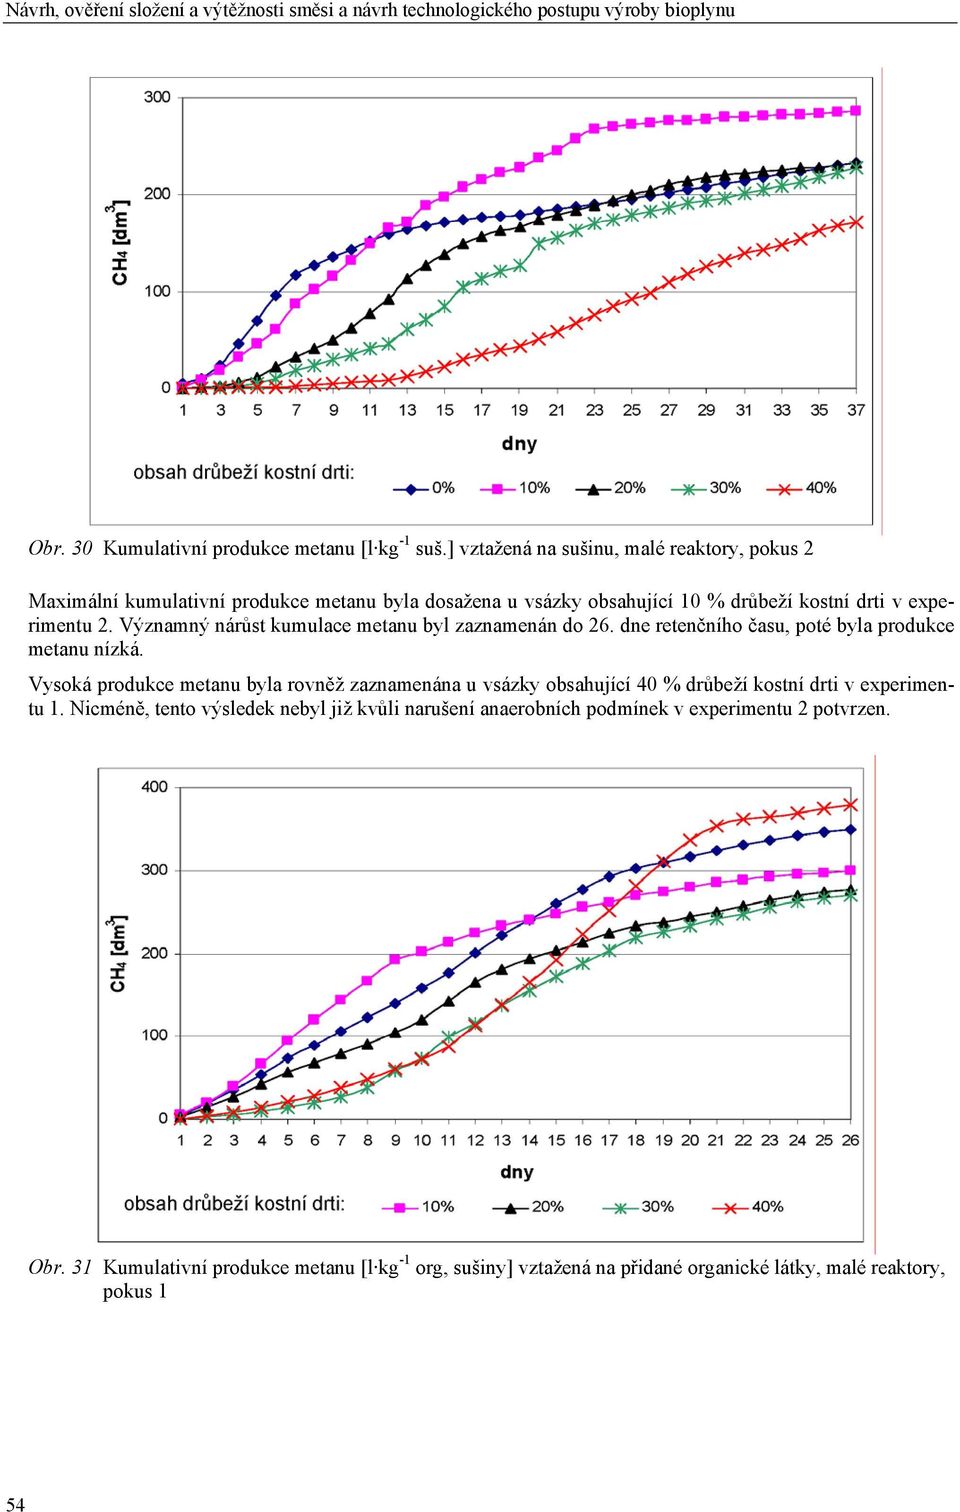 Významný nárůst kumulace metanu byl zaznamenán do 26. dne retenčního času, poté byla produkce metanu nízká.